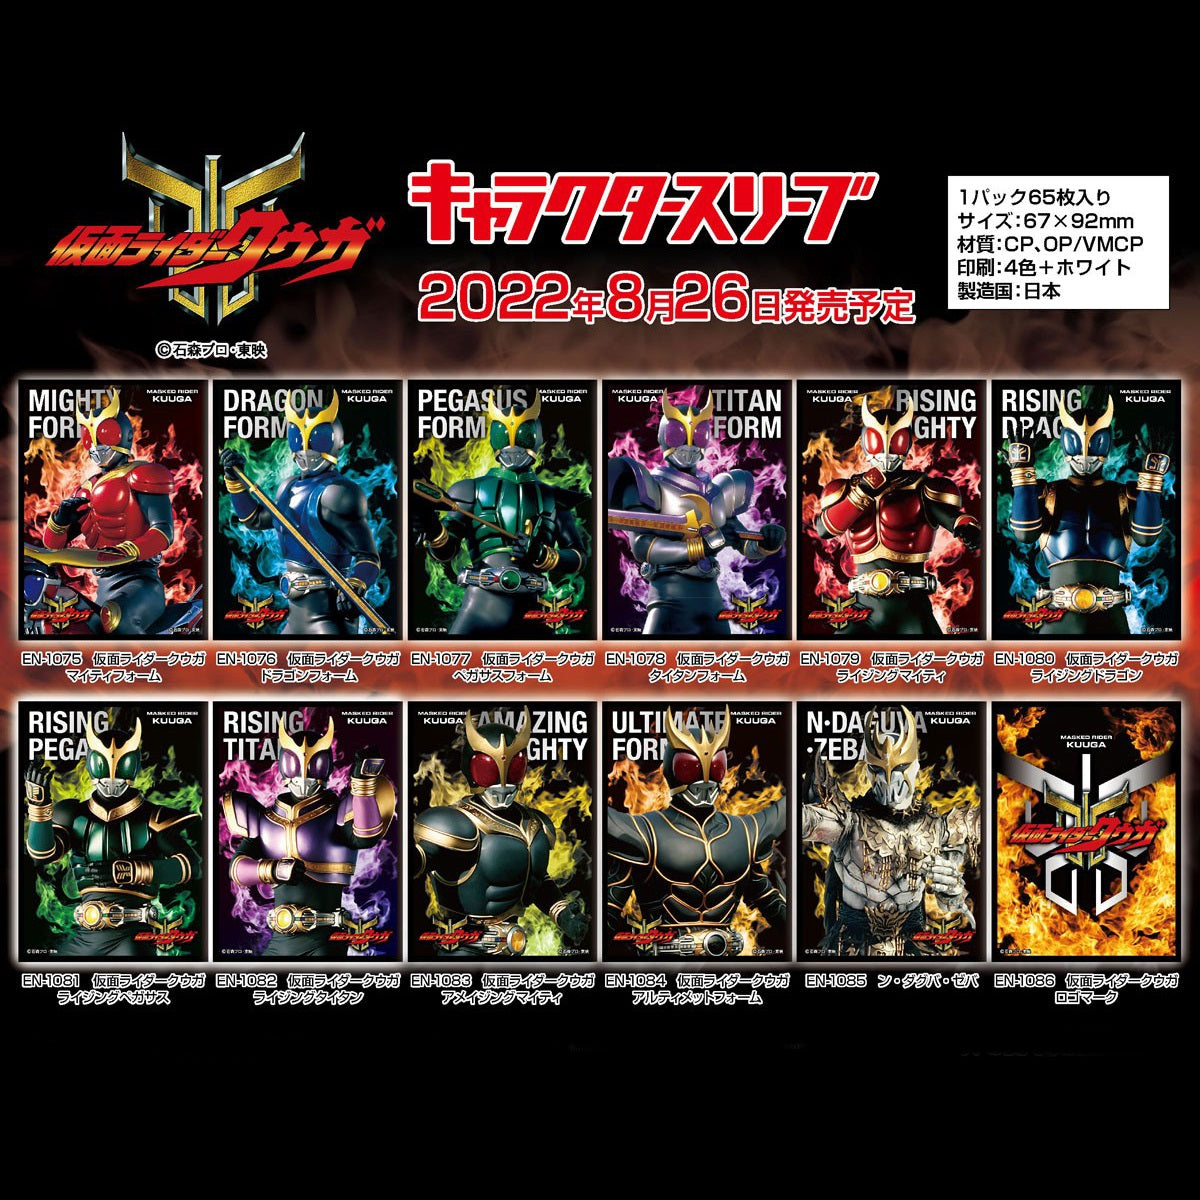 Kamen Rider Kuuga Character Sleeve Collection [EN-1085] "N Daguva Zeba"-Ensky-Ace Cards & Collectibles